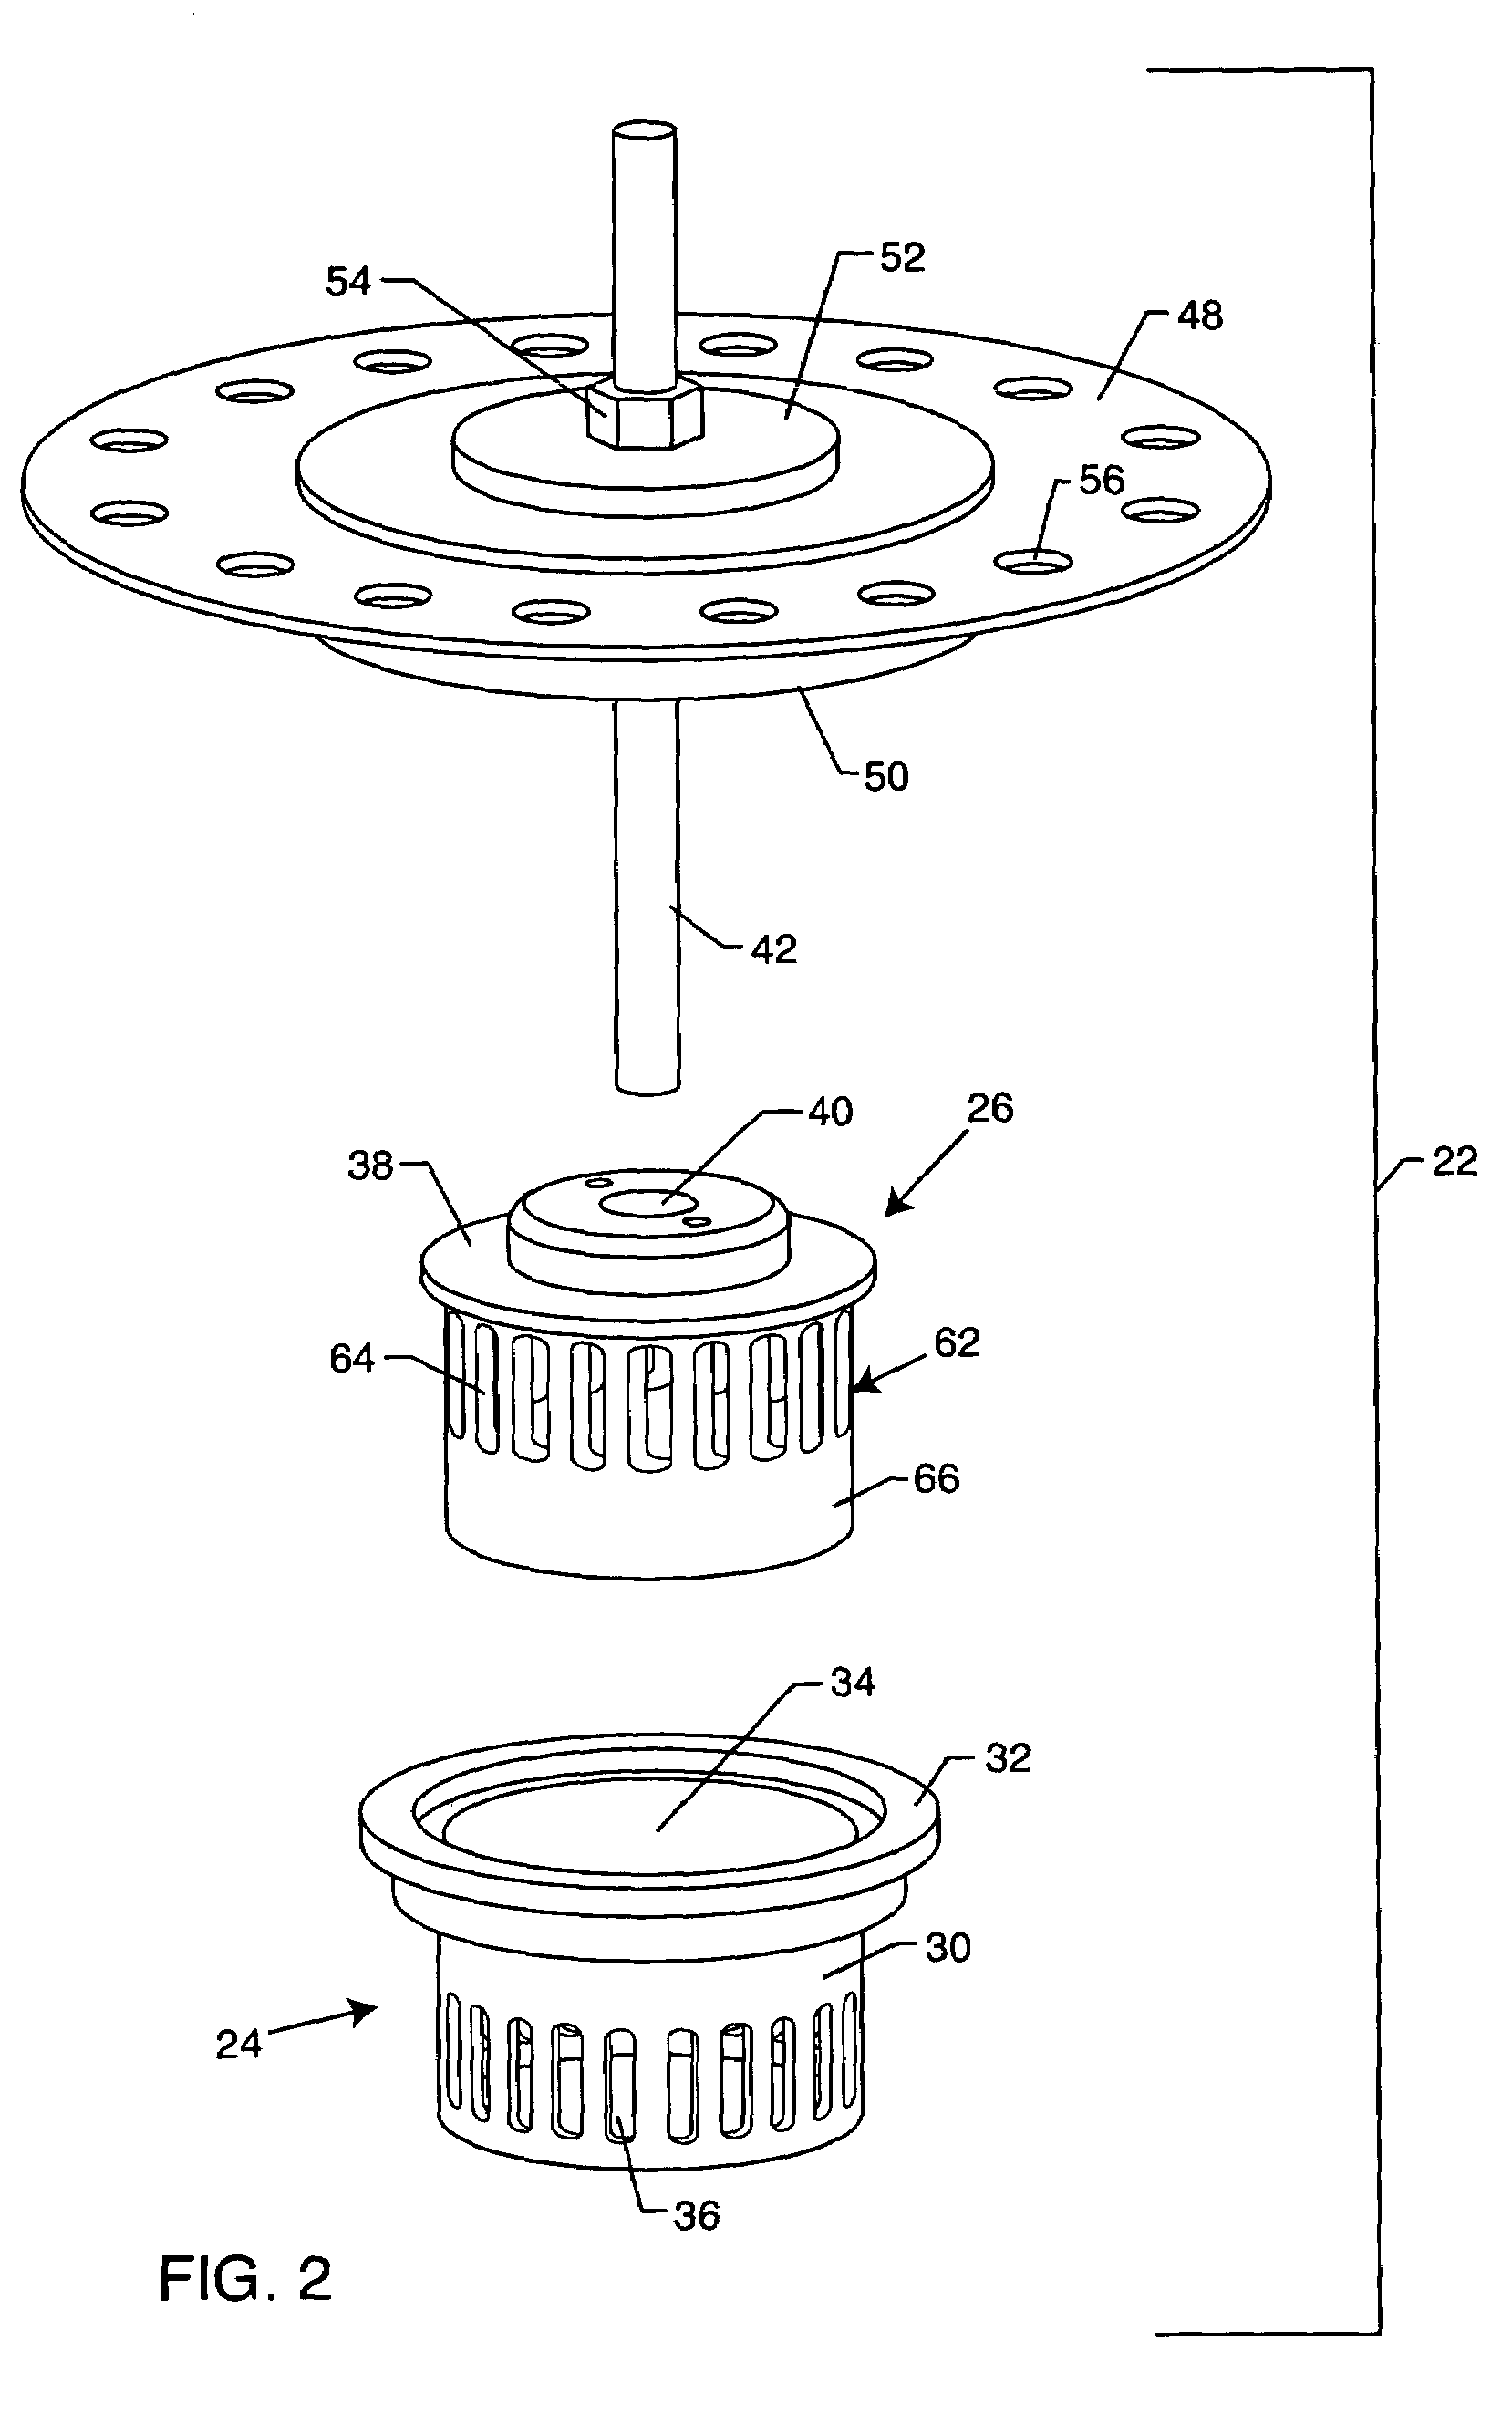 Anti-cavitation valve assembly